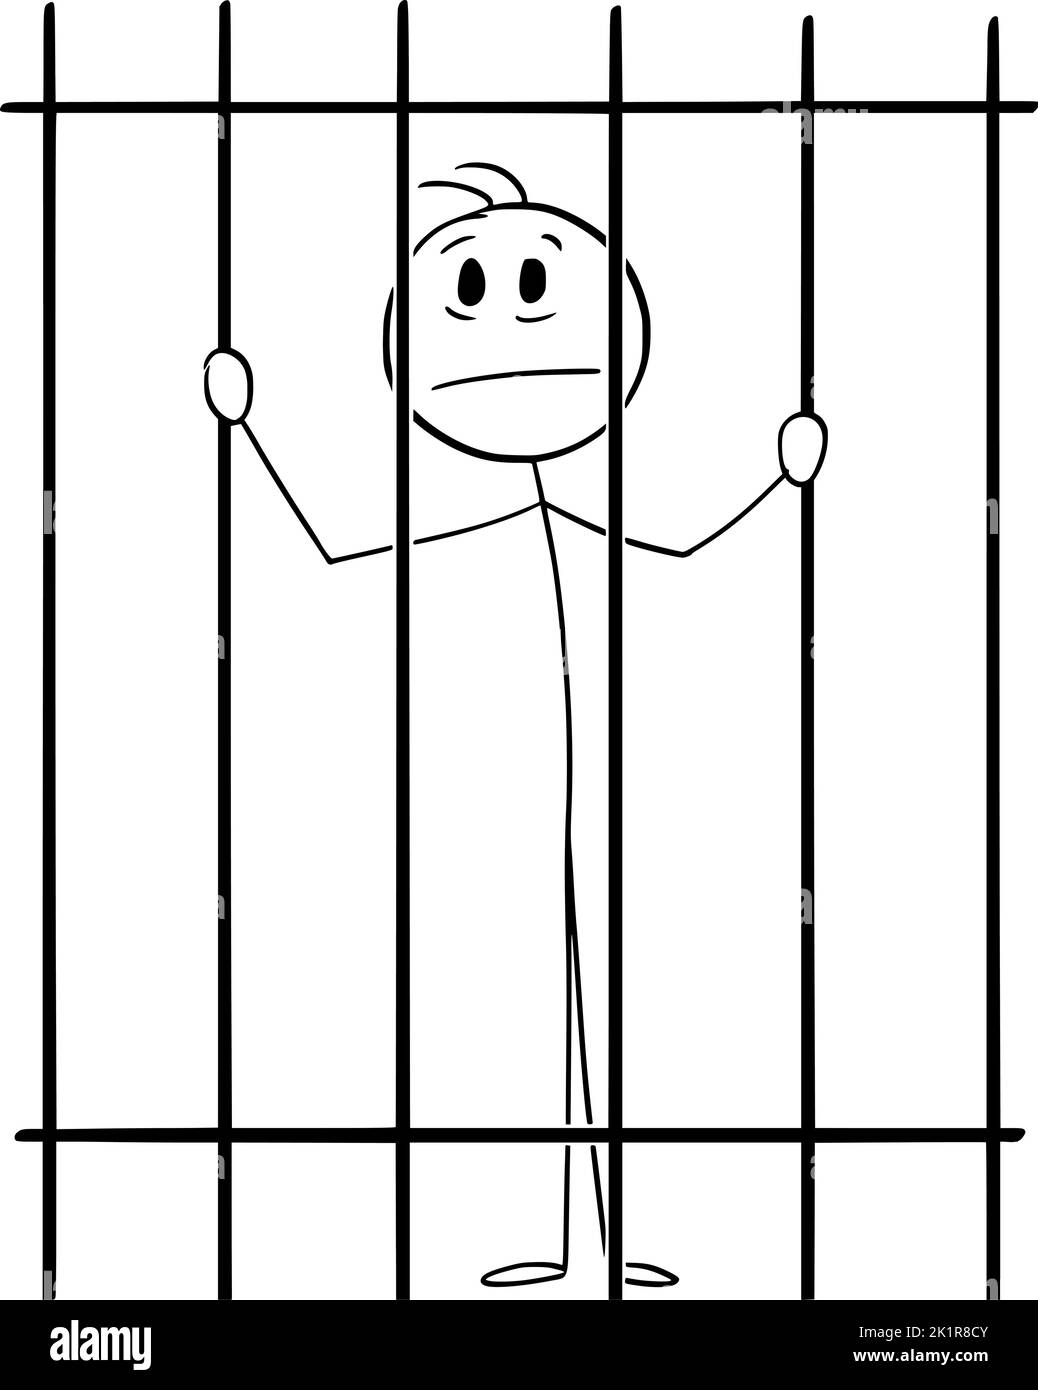 Prisionero Detrás de las barras de la cárcel, Vector Cartoon Stick Figura Ilustración Ilustración del Vector